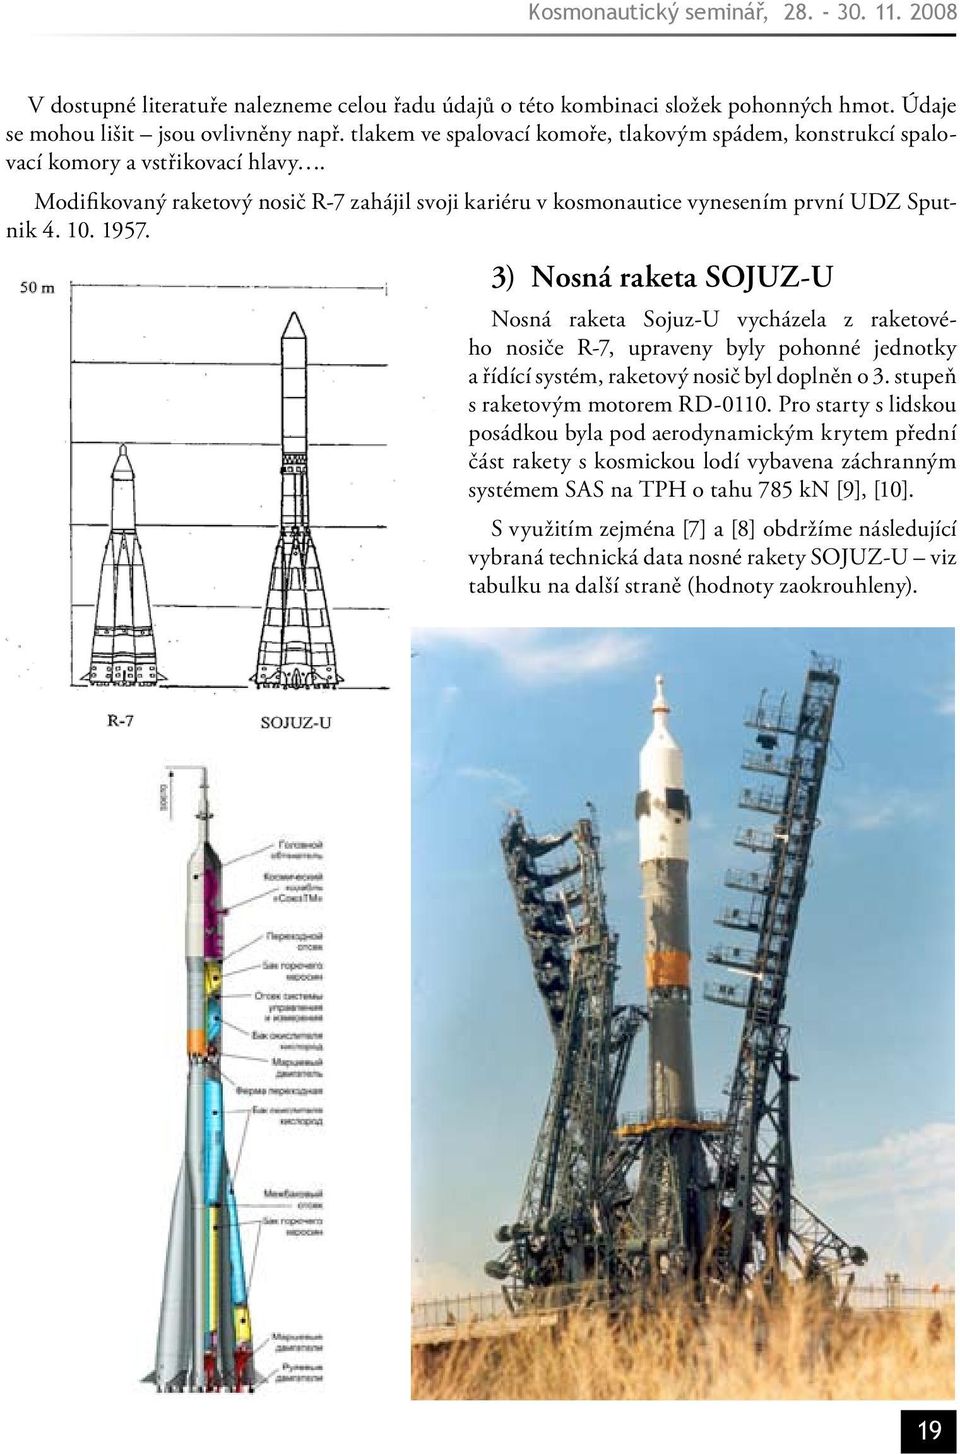 1957. 3) Nosná raketa SOJUZ-U Nosná raketa Sojuz-U vycházela z raketového nosiče R-7, upraveny byly pohonné jednotky a řídící systém, raketový nosič byl doplněn o 3.